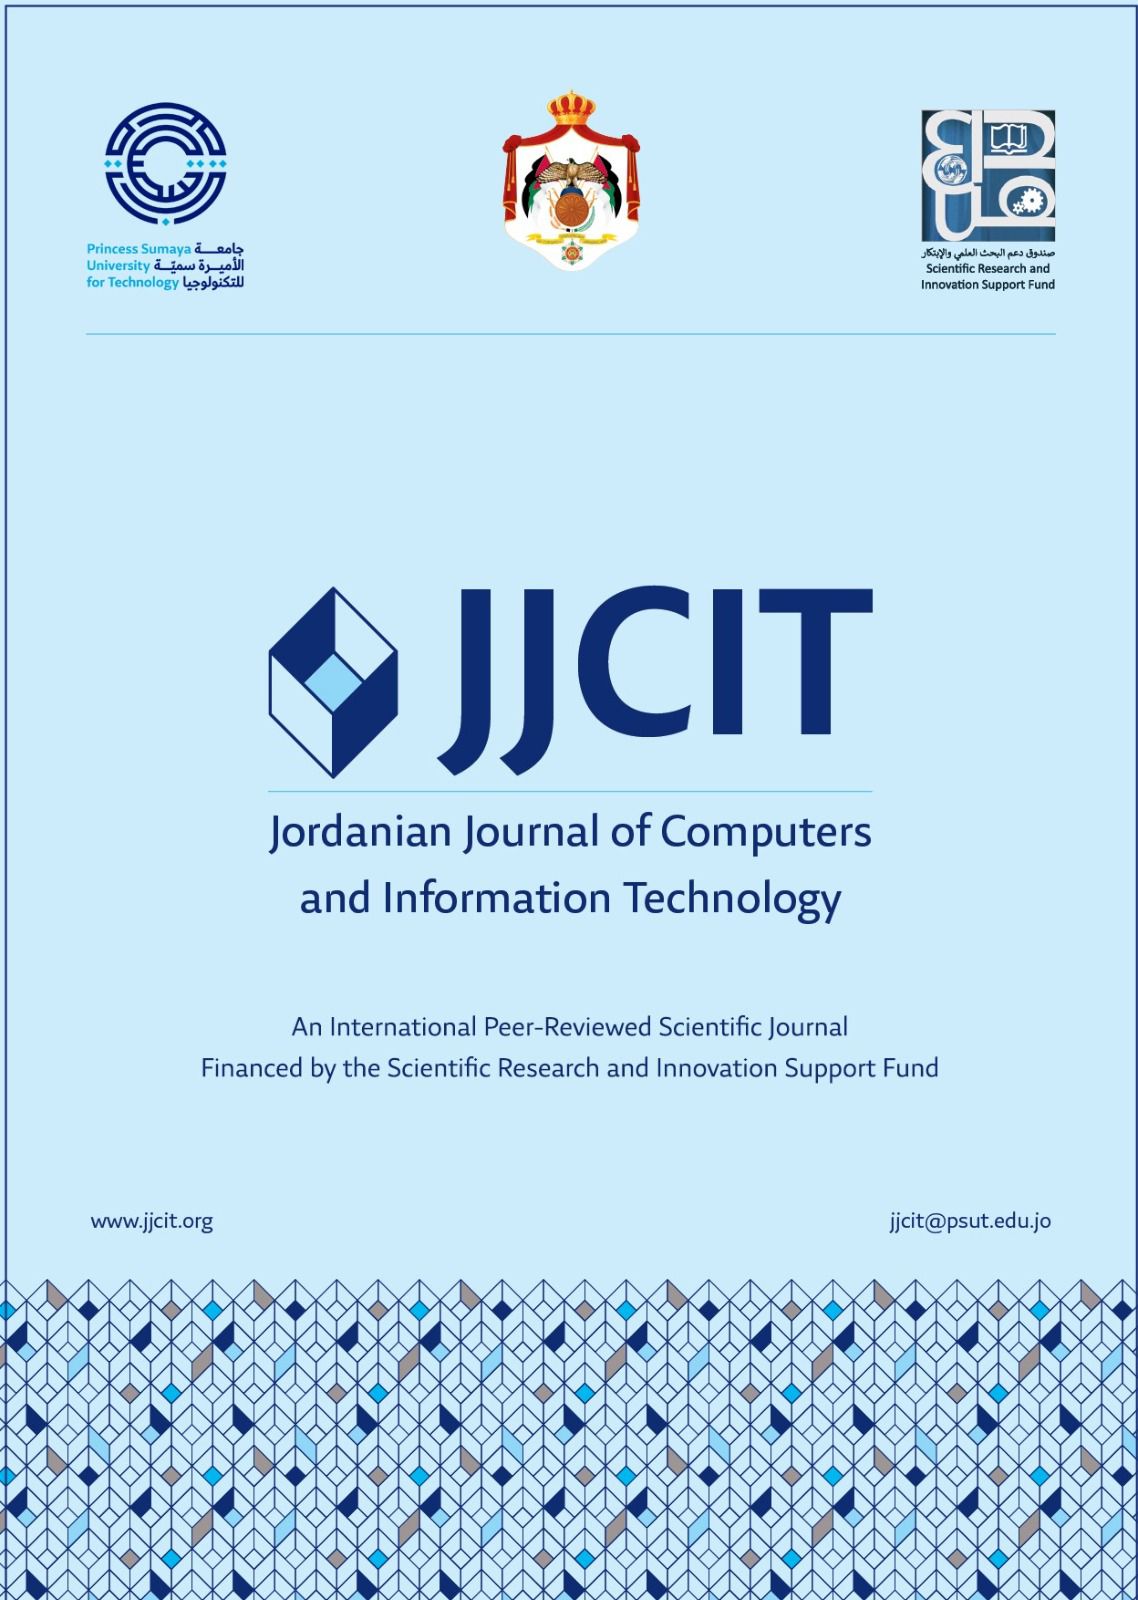 فهرسةُ المجلة الأردنية للحاسوب وتكنولوجيا المعلومات في جامعة الأميرة سمية للتكنولوجيا